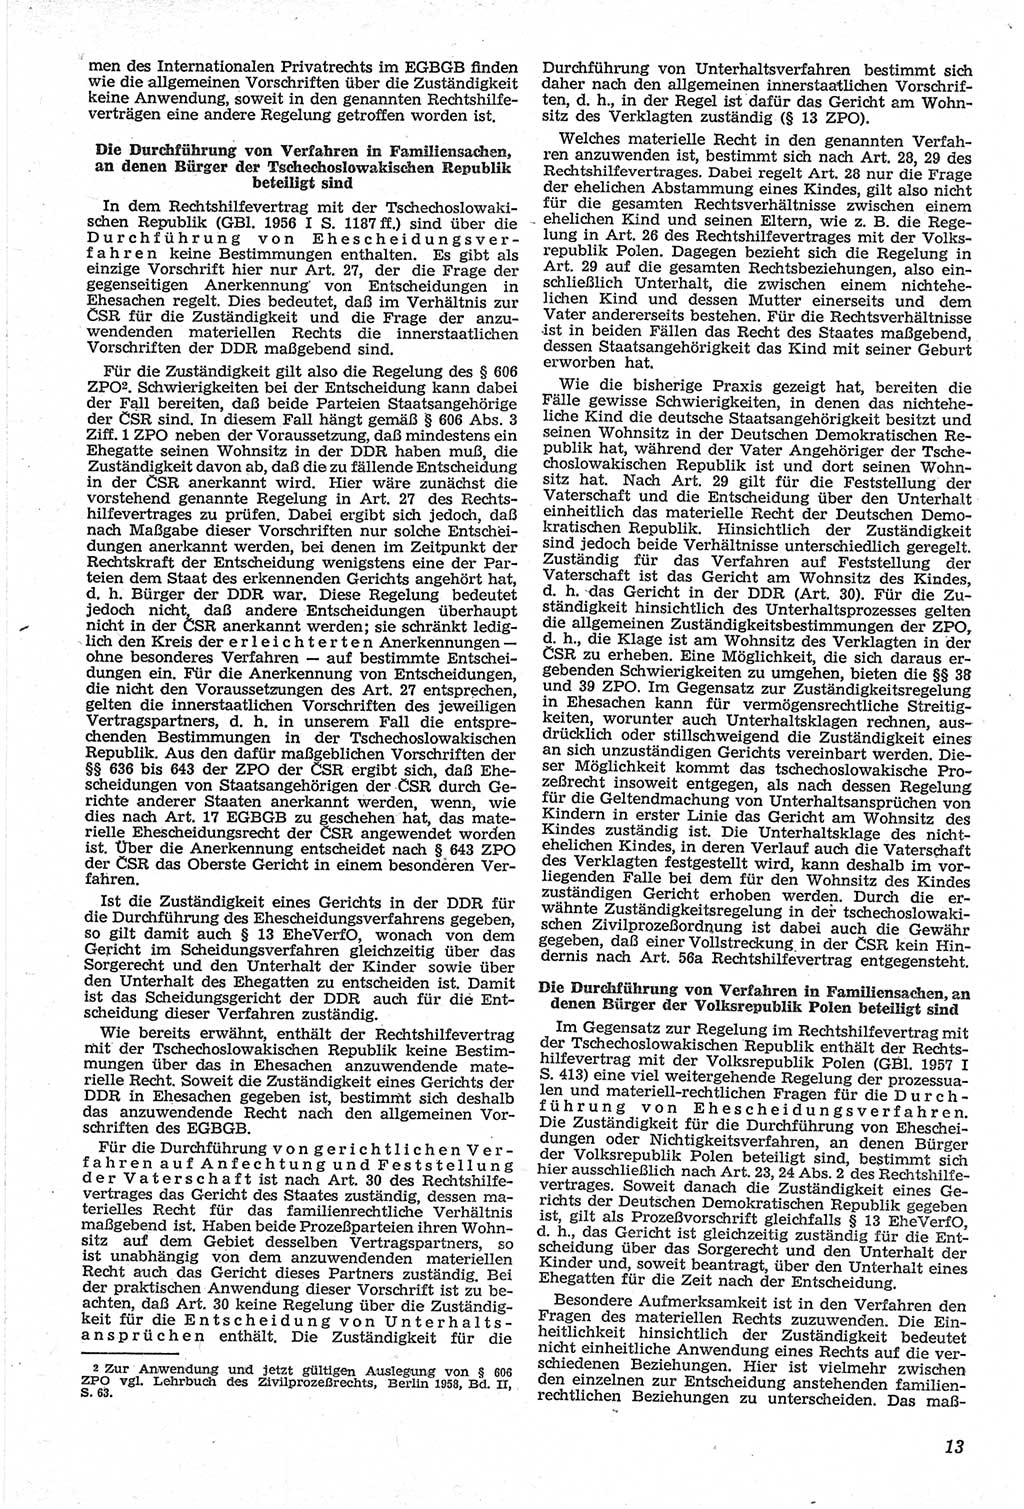 Neue Justiz (NJ), Zeitschrift für Recht und Rechtswissenschaft [Deutsche Demokratische Republik (DDR)], 14. Jahrgang 1960, Seite 13 (NJ DDR 1960, S. 13)